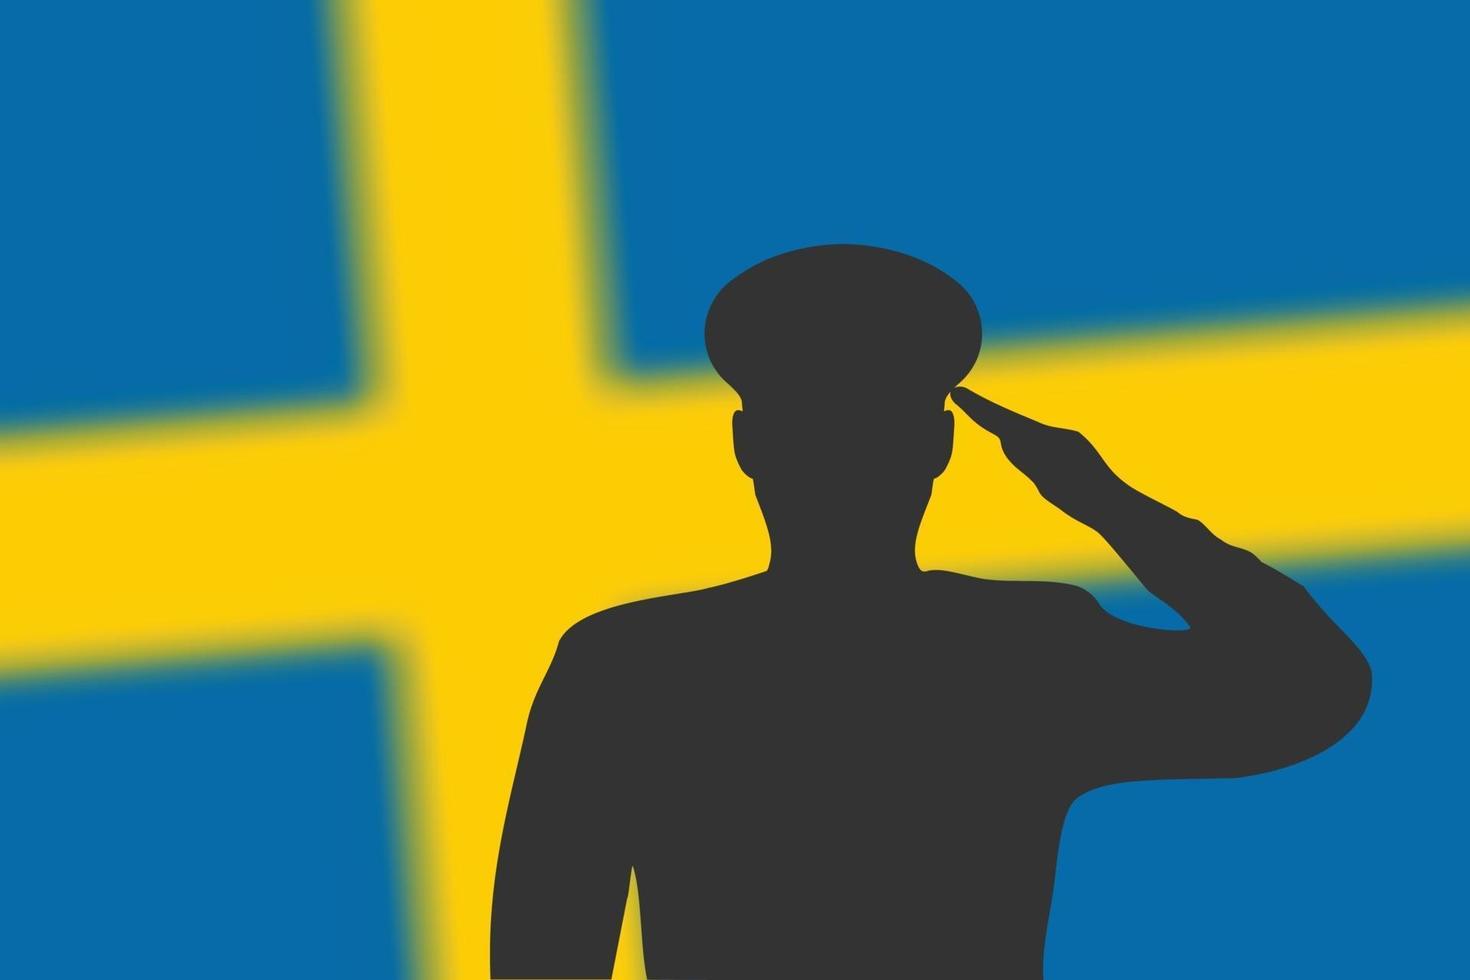 Lötsilhouette auf unscharfem Hintergrund mit schwedischer Flagge. vektor